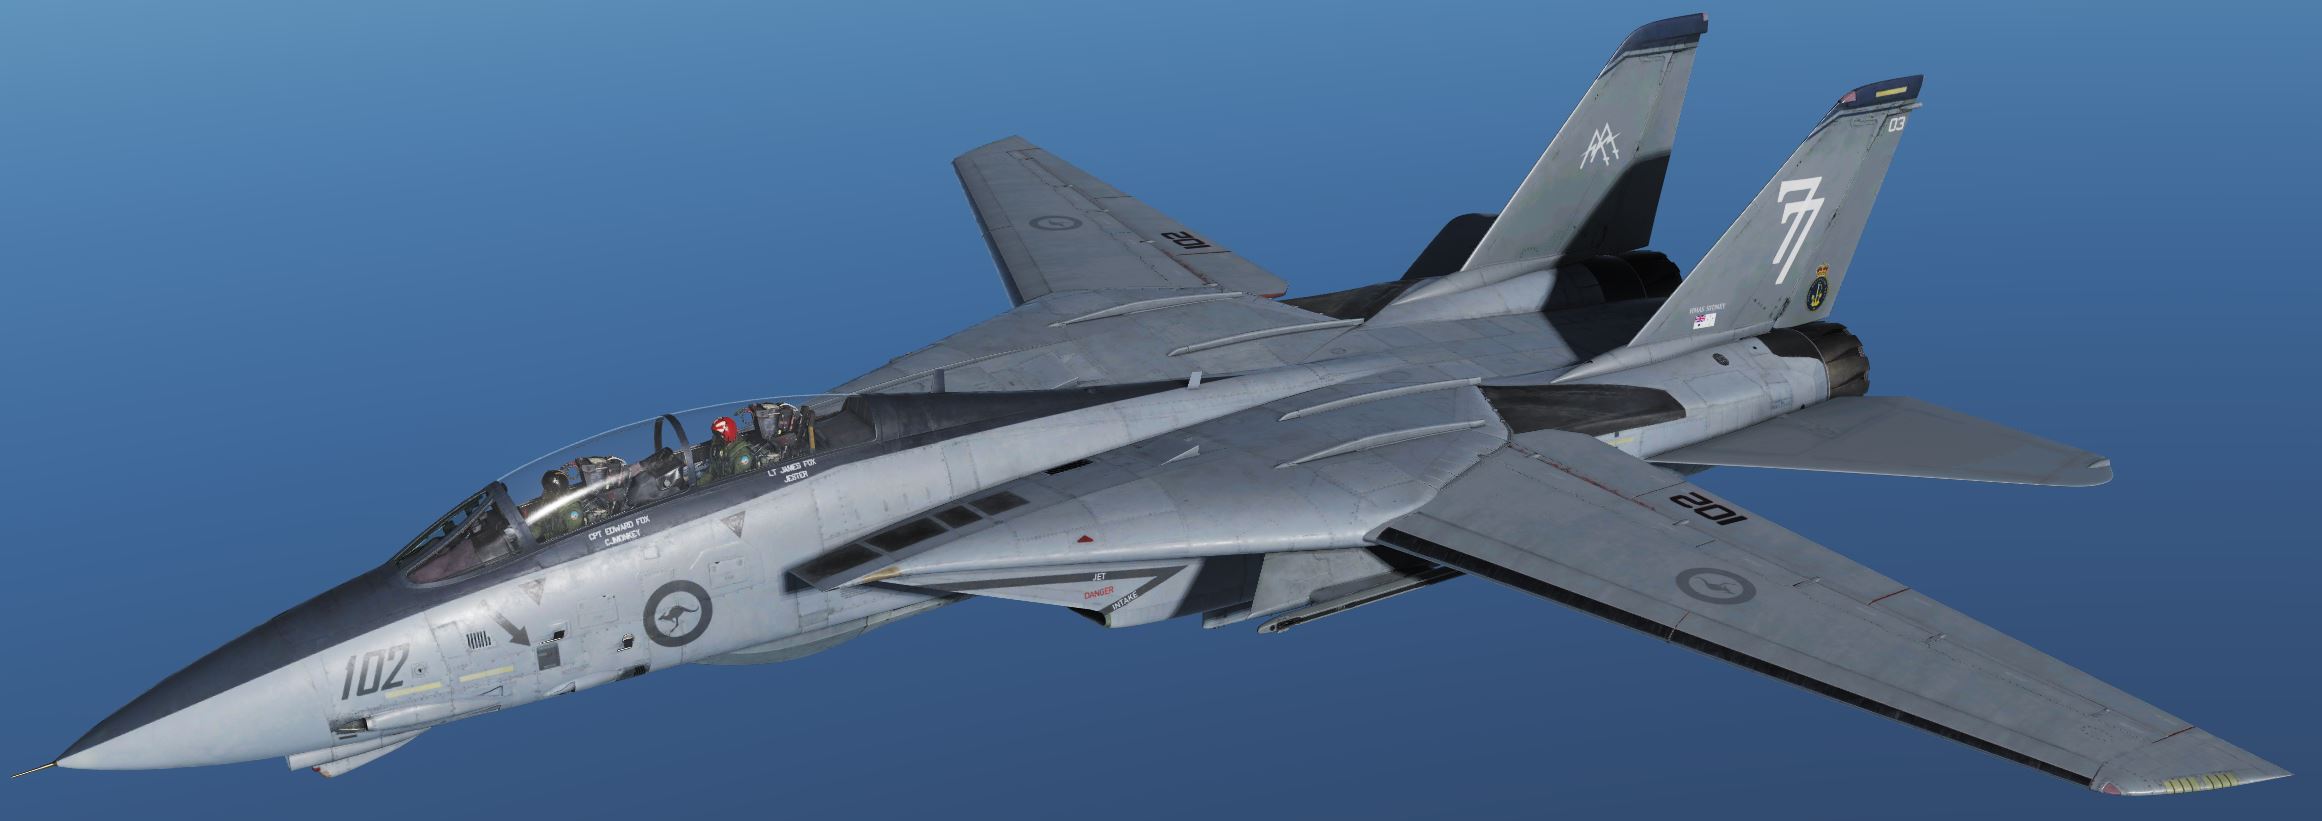 RAN F14 77SQN 